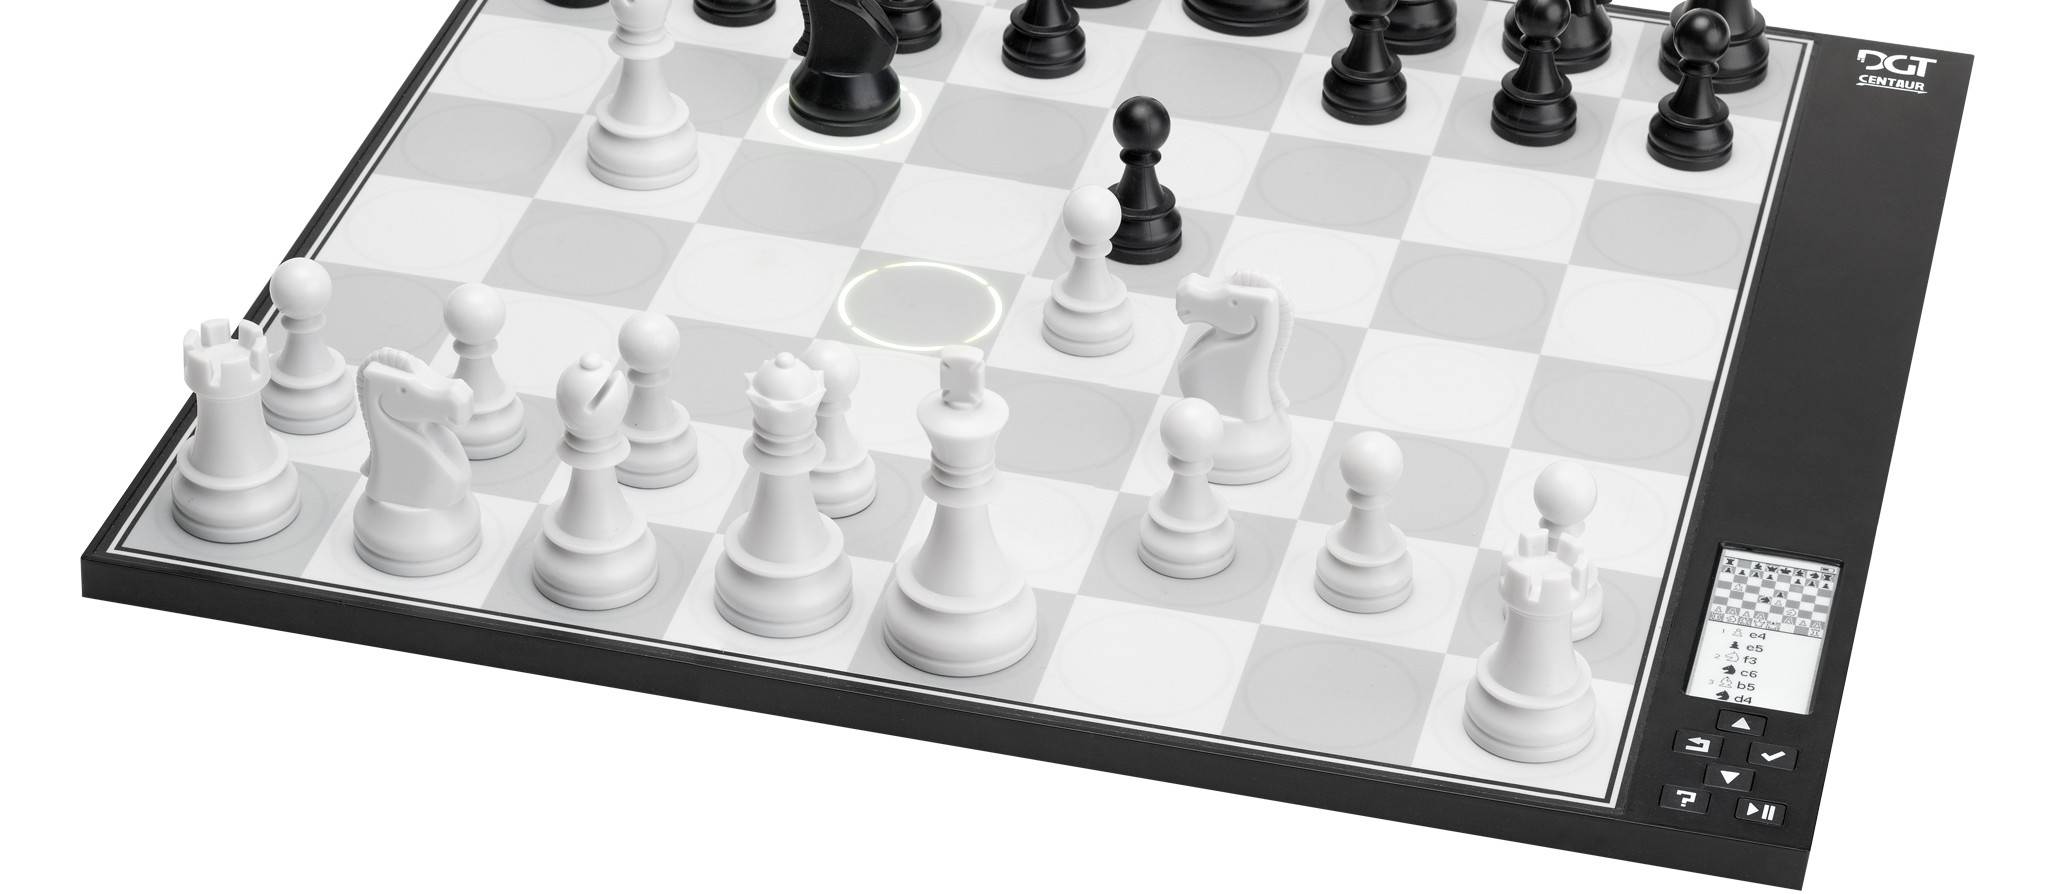 Battle vs Chess Impressions